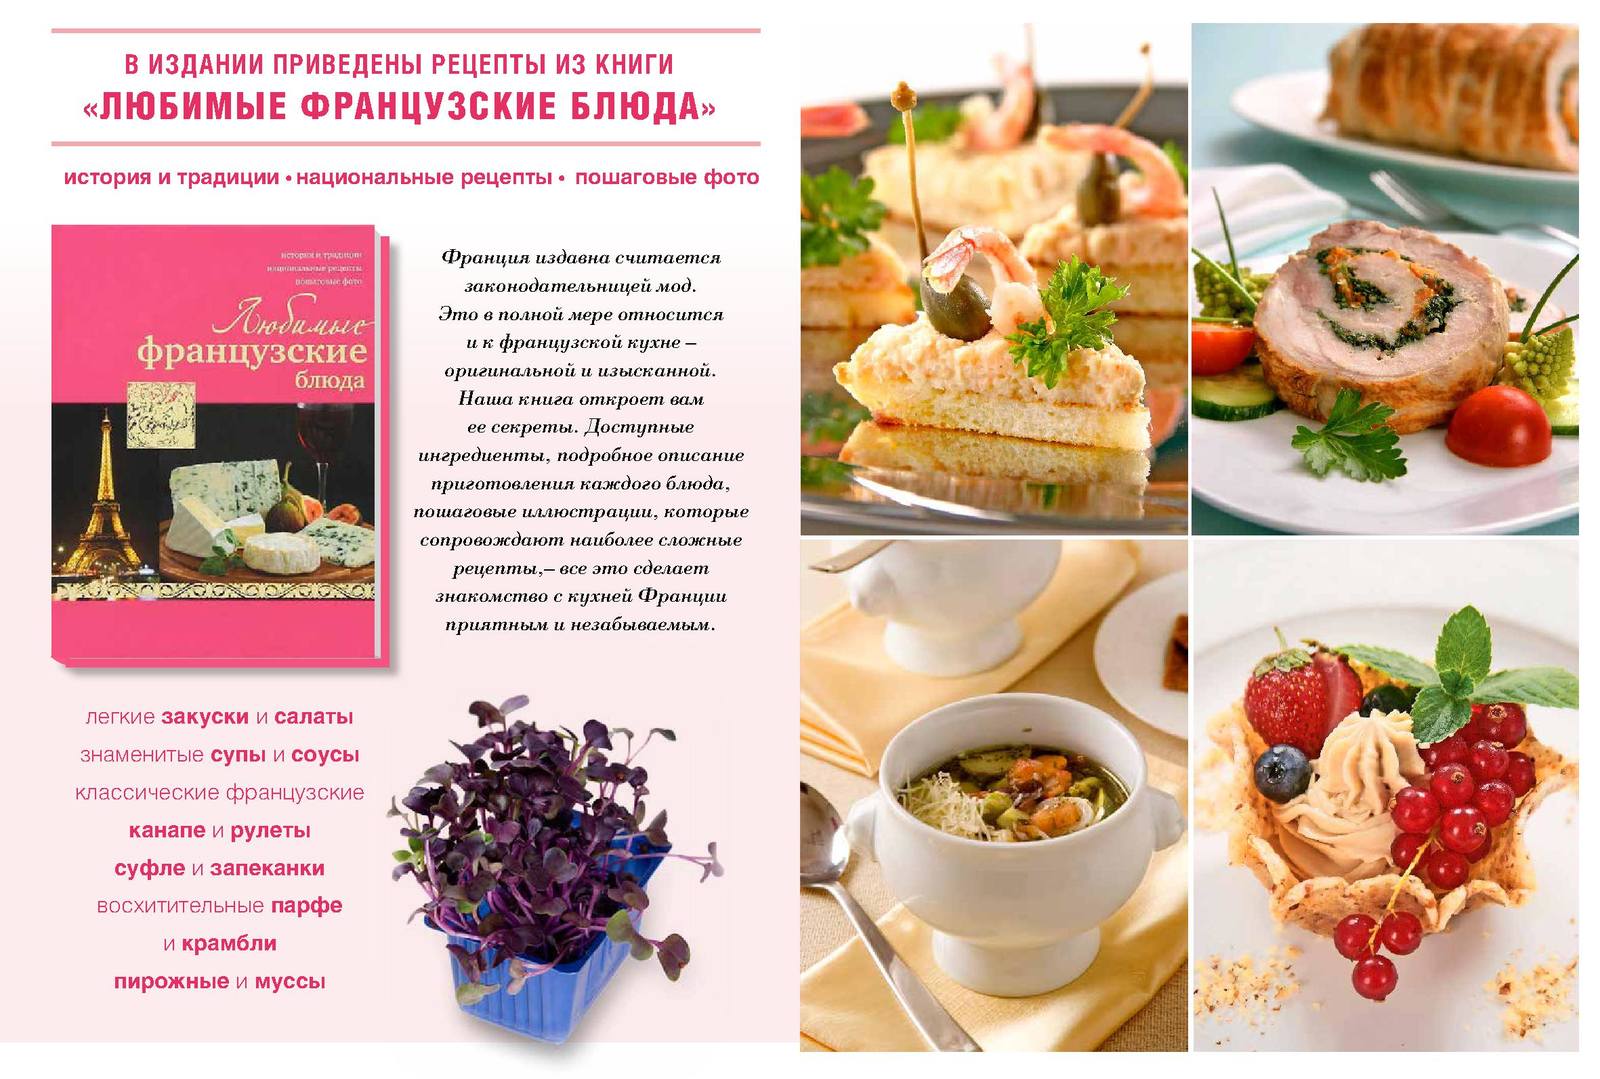 Книга рецептов французской кухни